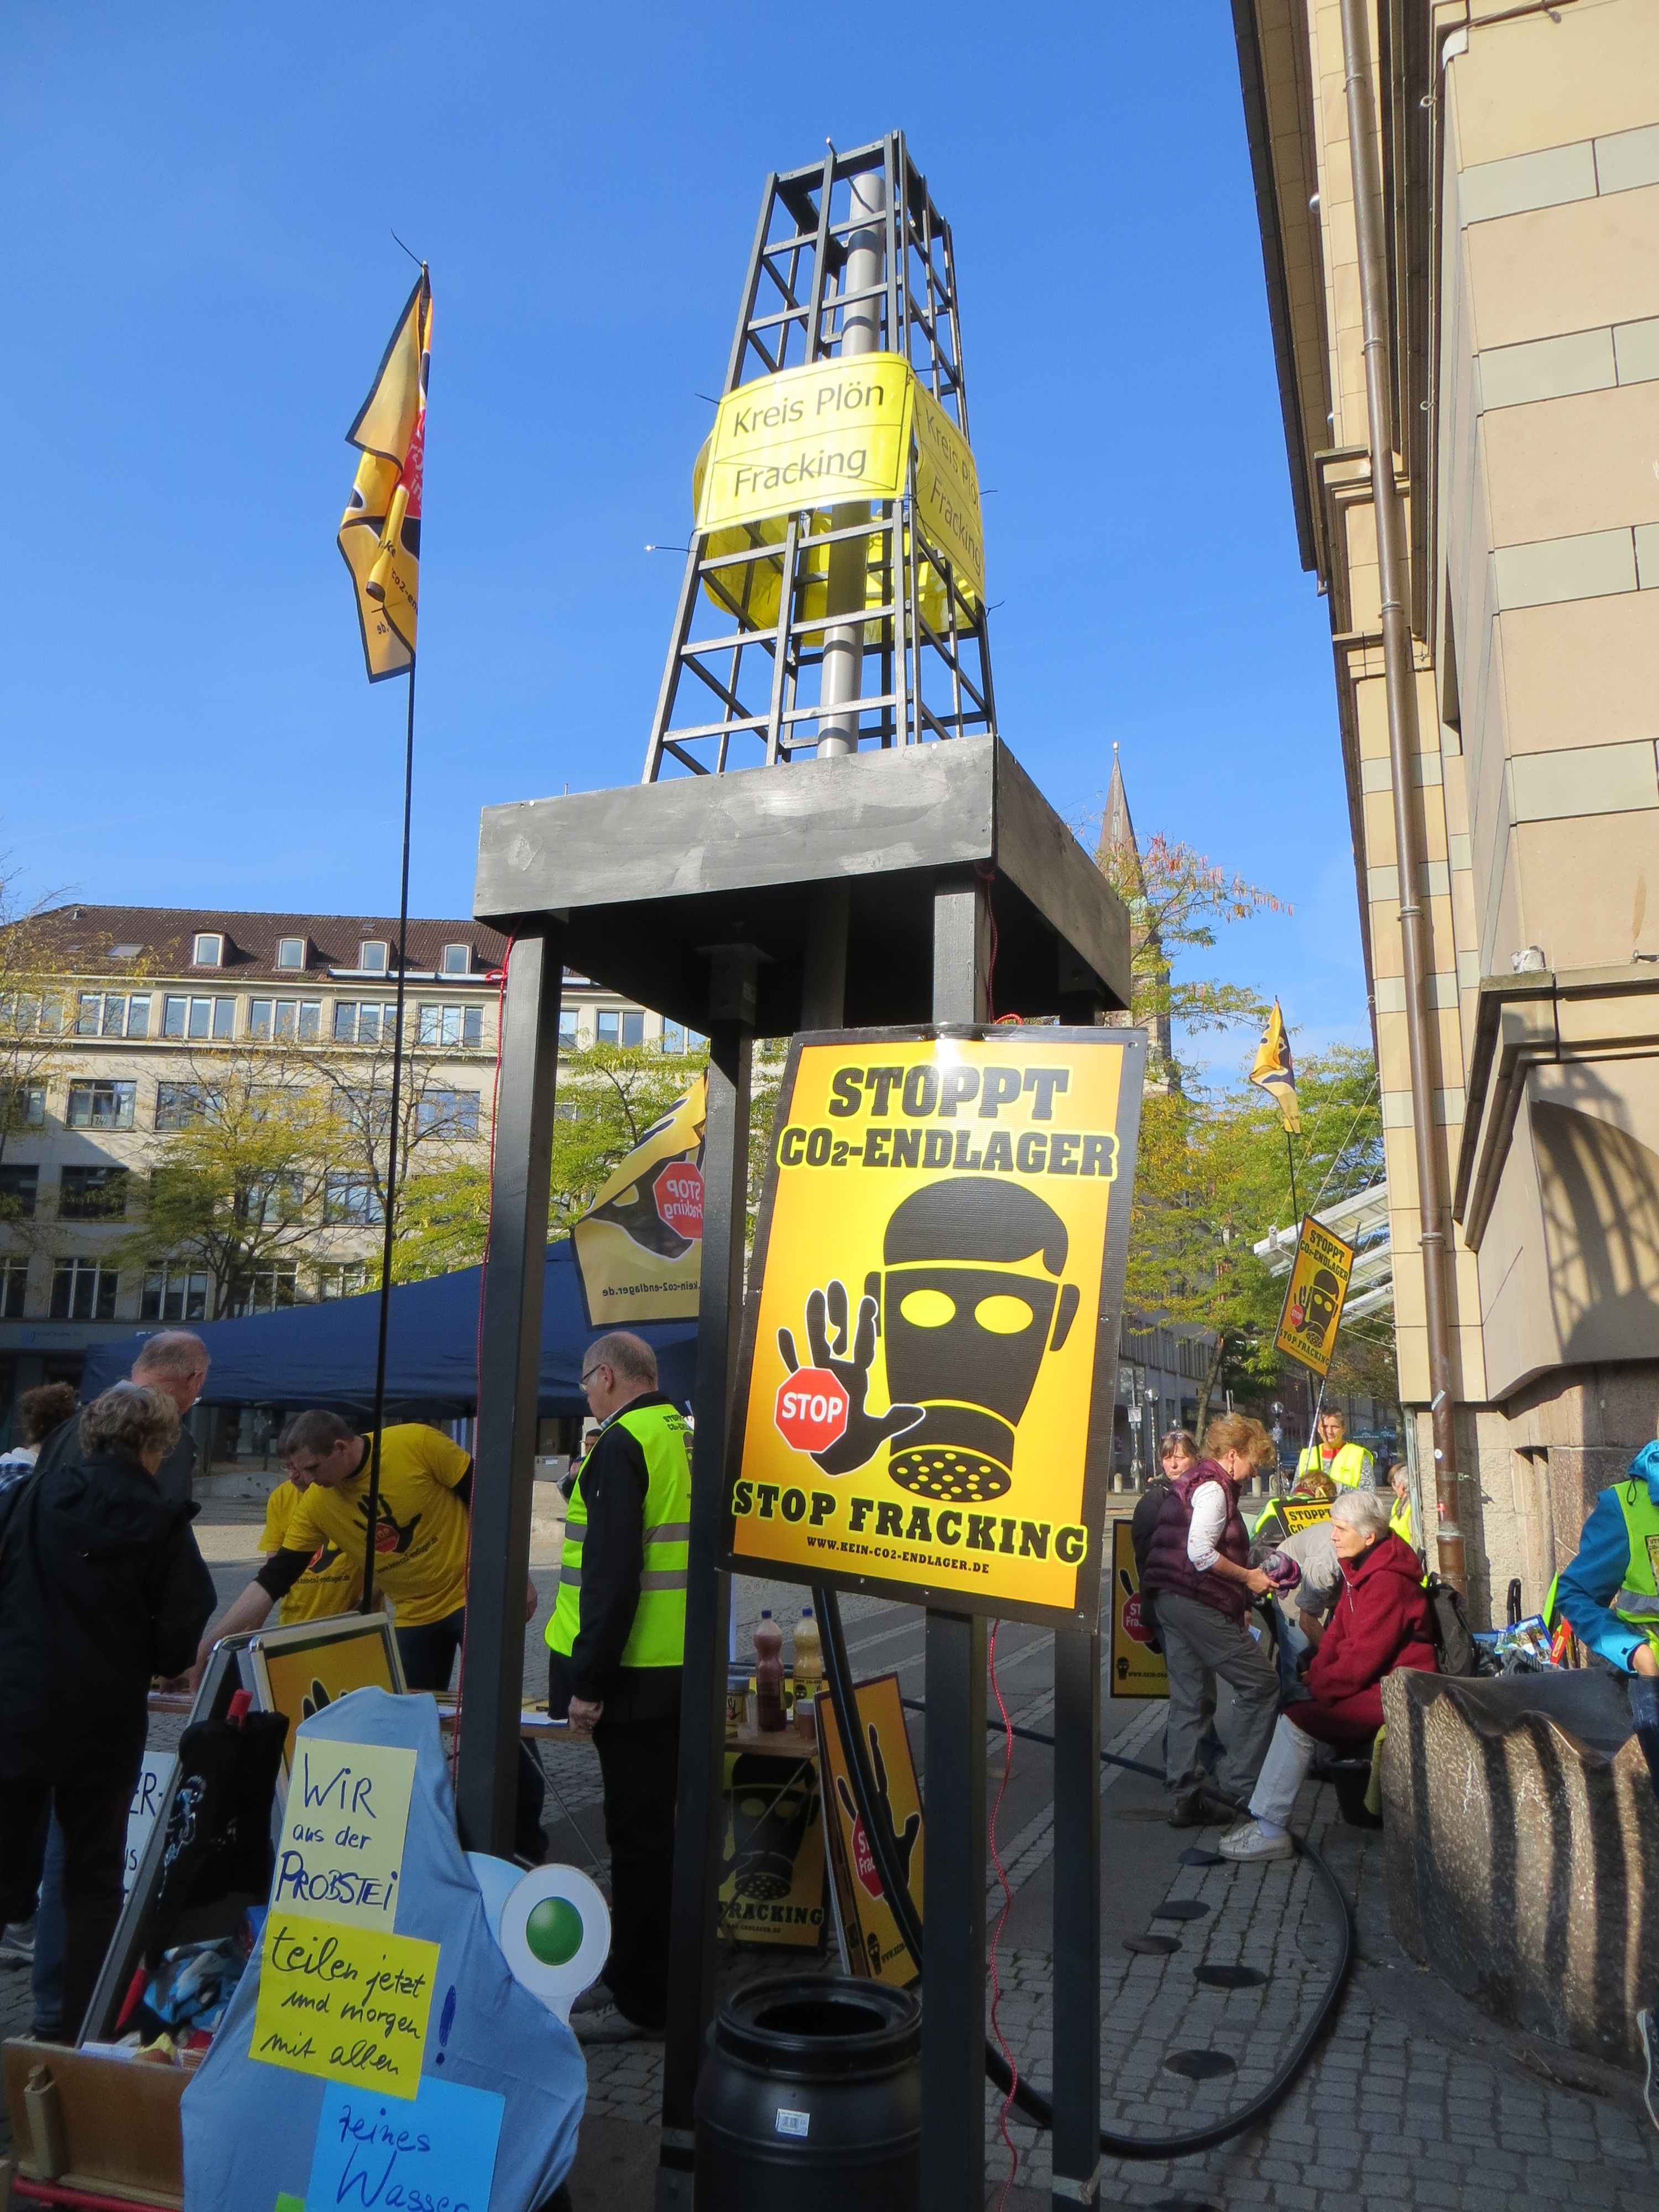 Erlaubt das Landesverfassungsgericht Deutschlands erste landesweite #Fracking-Verbotszone?